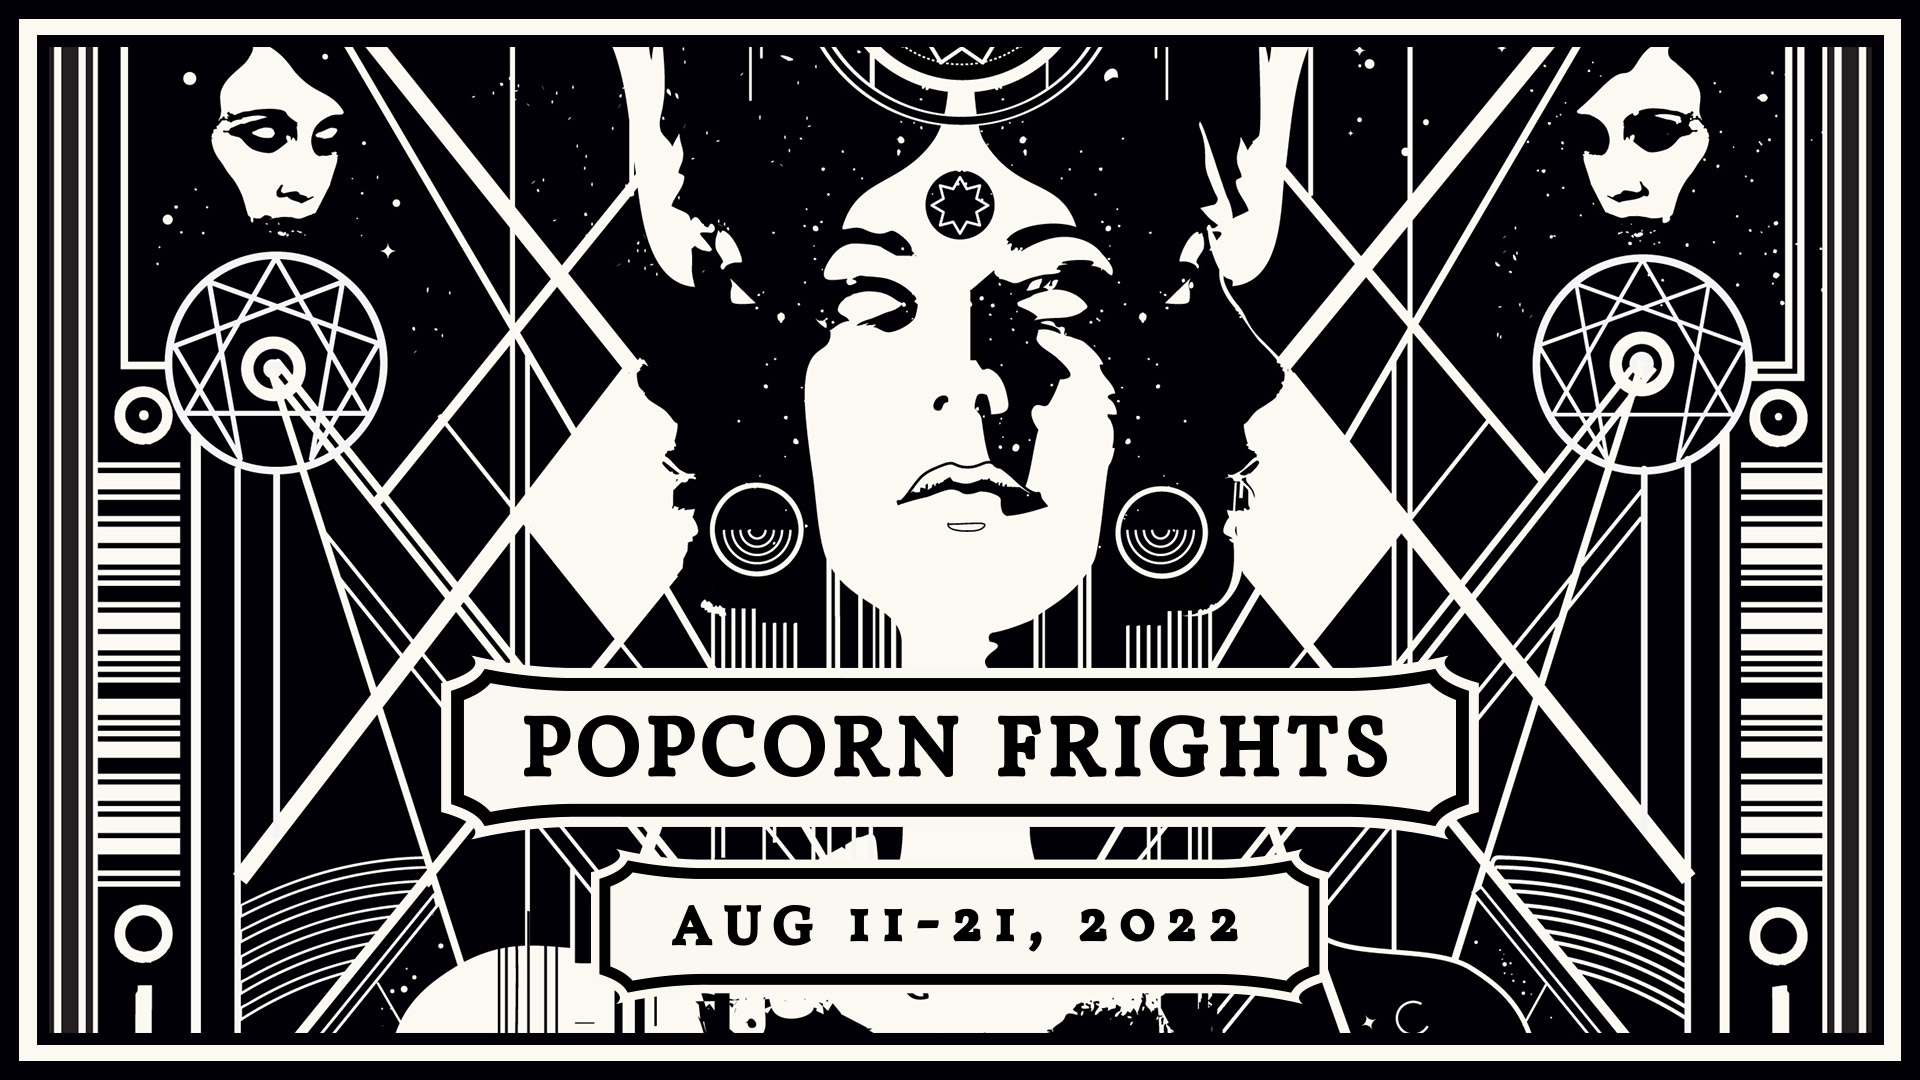 2022 Popcorn Frights Film Festival